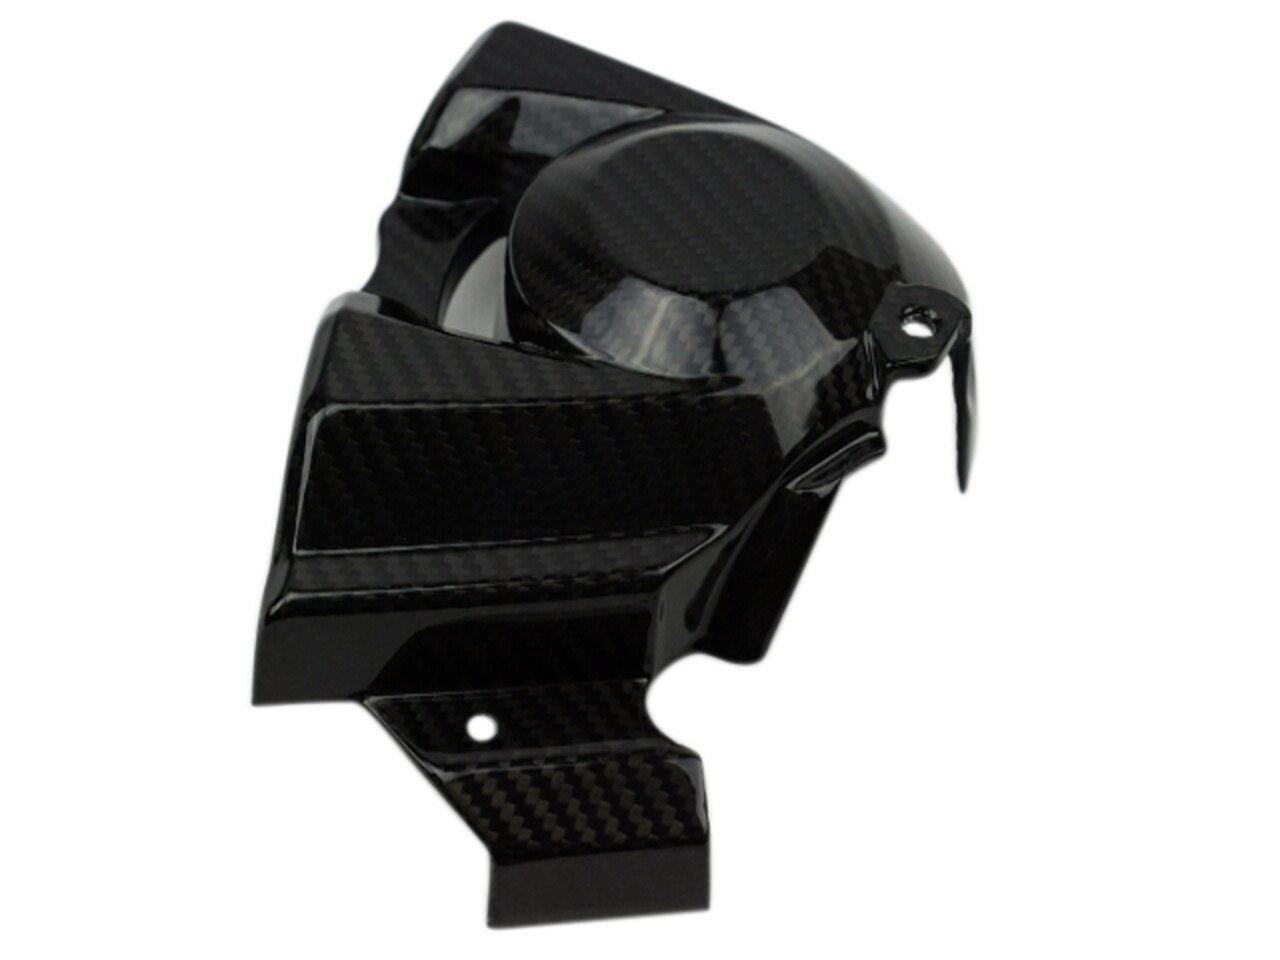 Motocomposites Sprocket Cover in 100% Carbon Fiber for Kawasaki Ninja H2